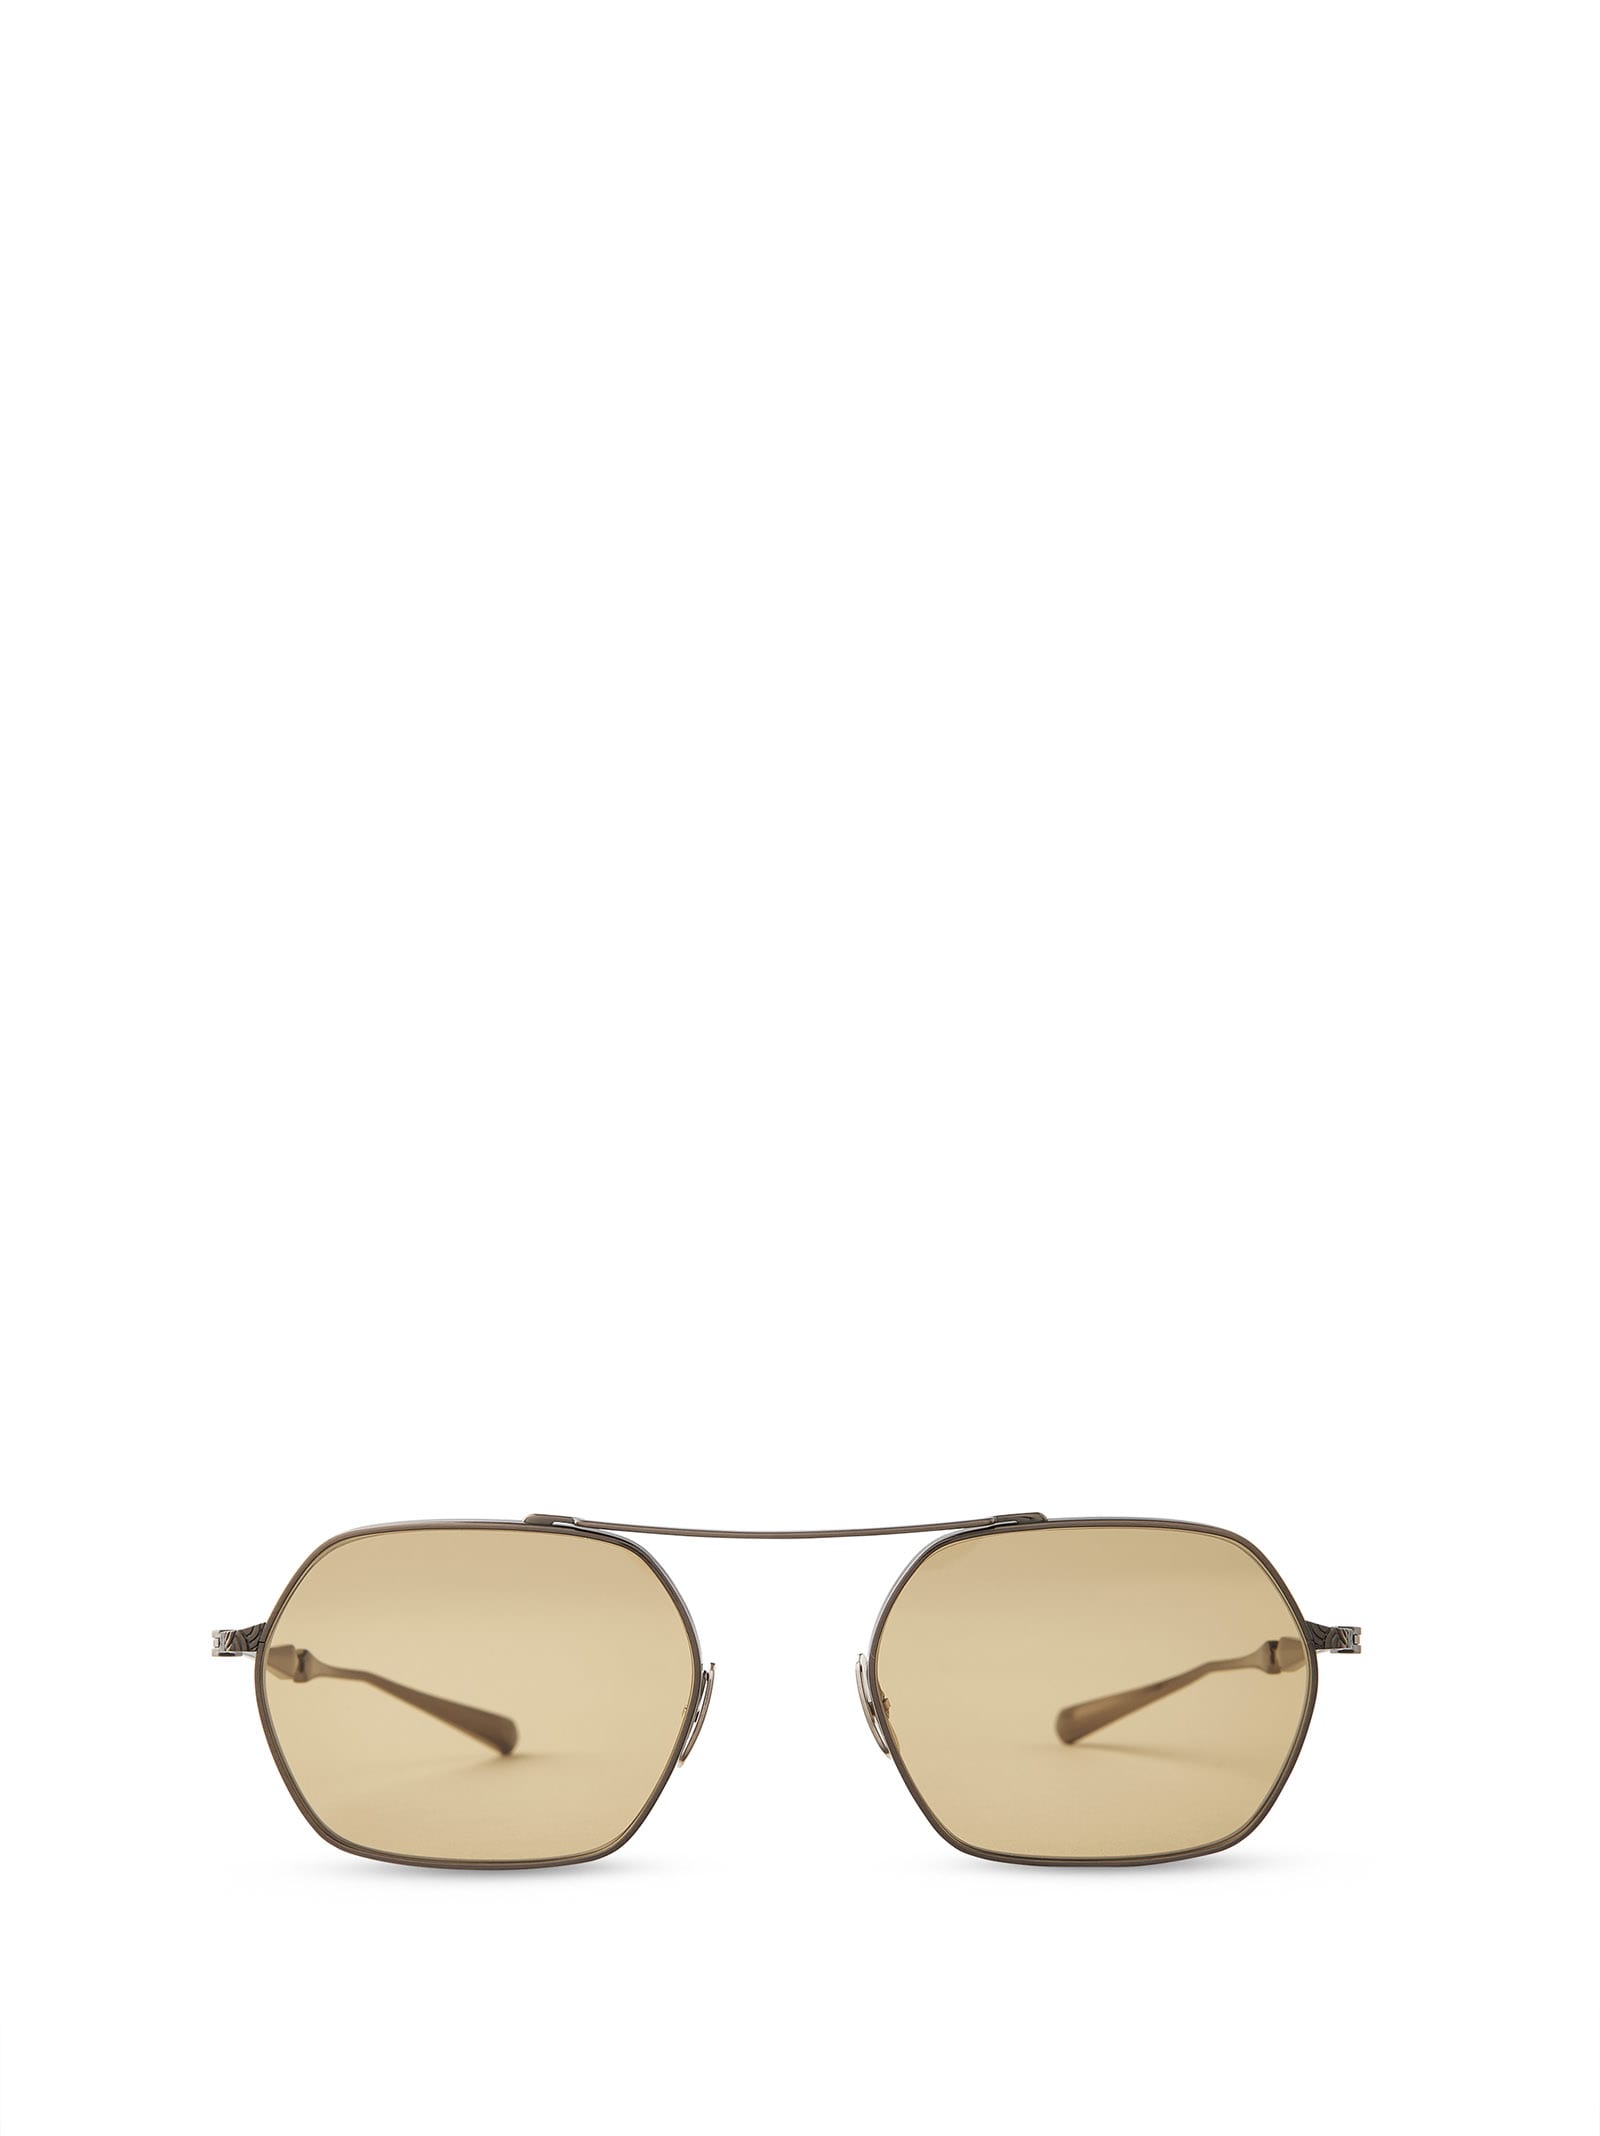 Ryder S 12k White Gold Sunglasses